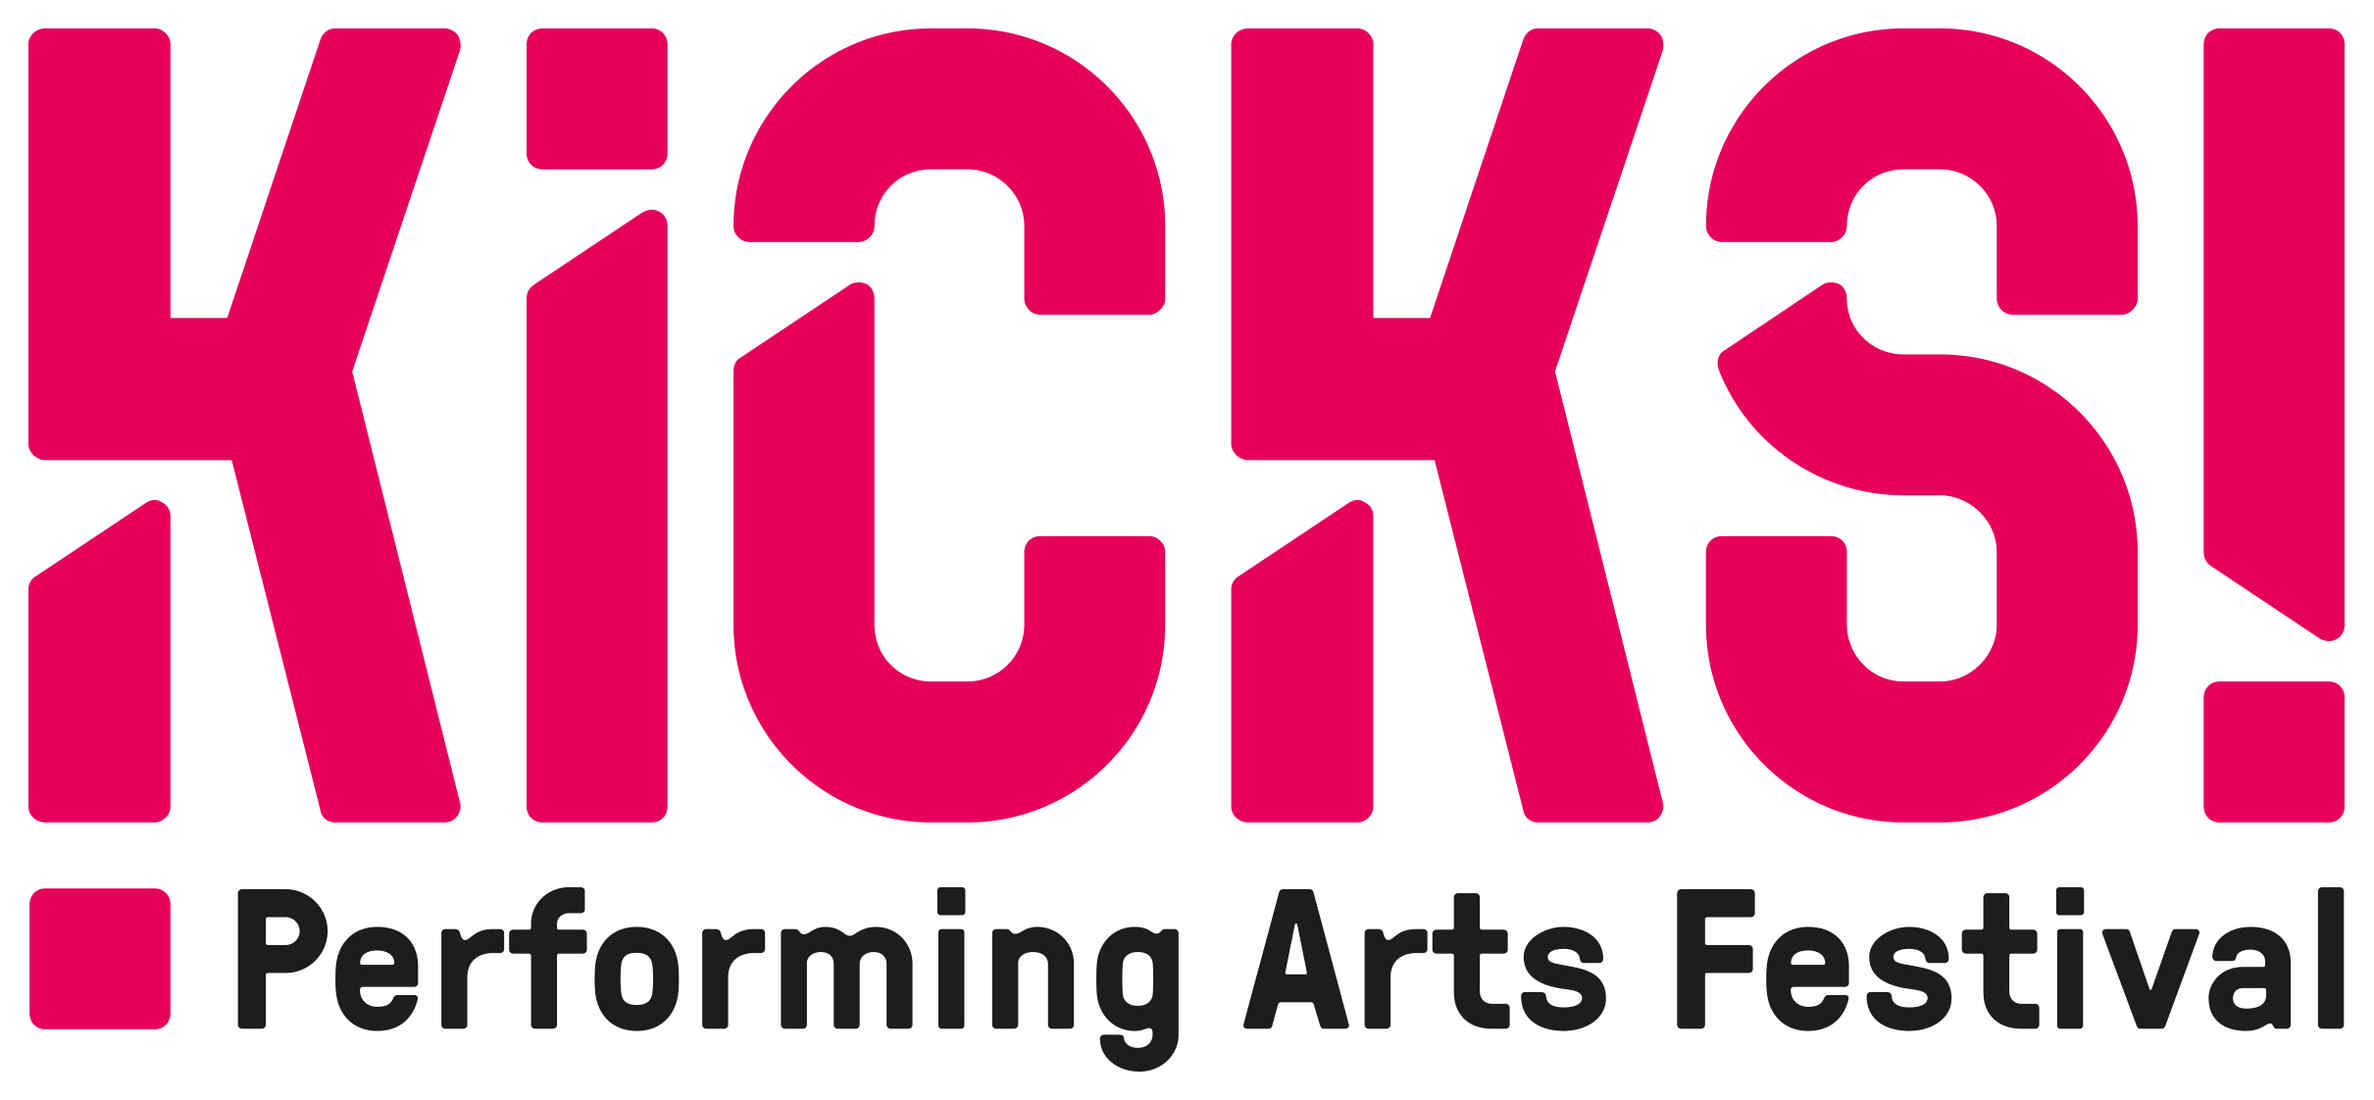 KICKS! Logo performing arts festival.jpg